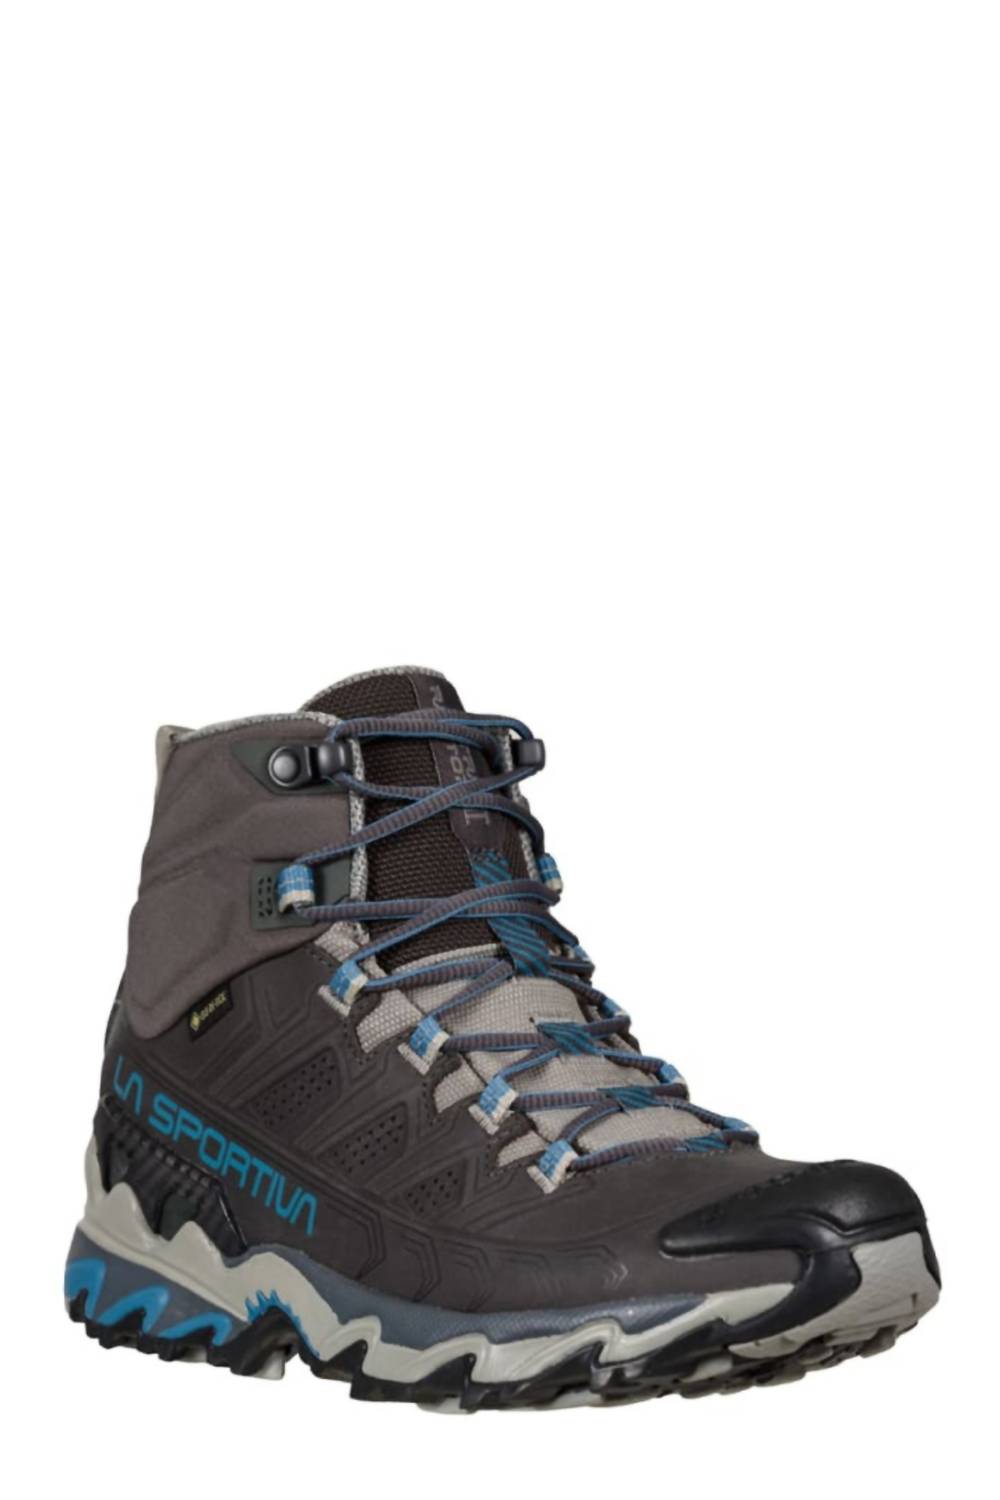 La Sportiva Women's Ultra Raptor Ii Mid Leather Gtx Hiking Shoes In Carbon/atlantic In Gray